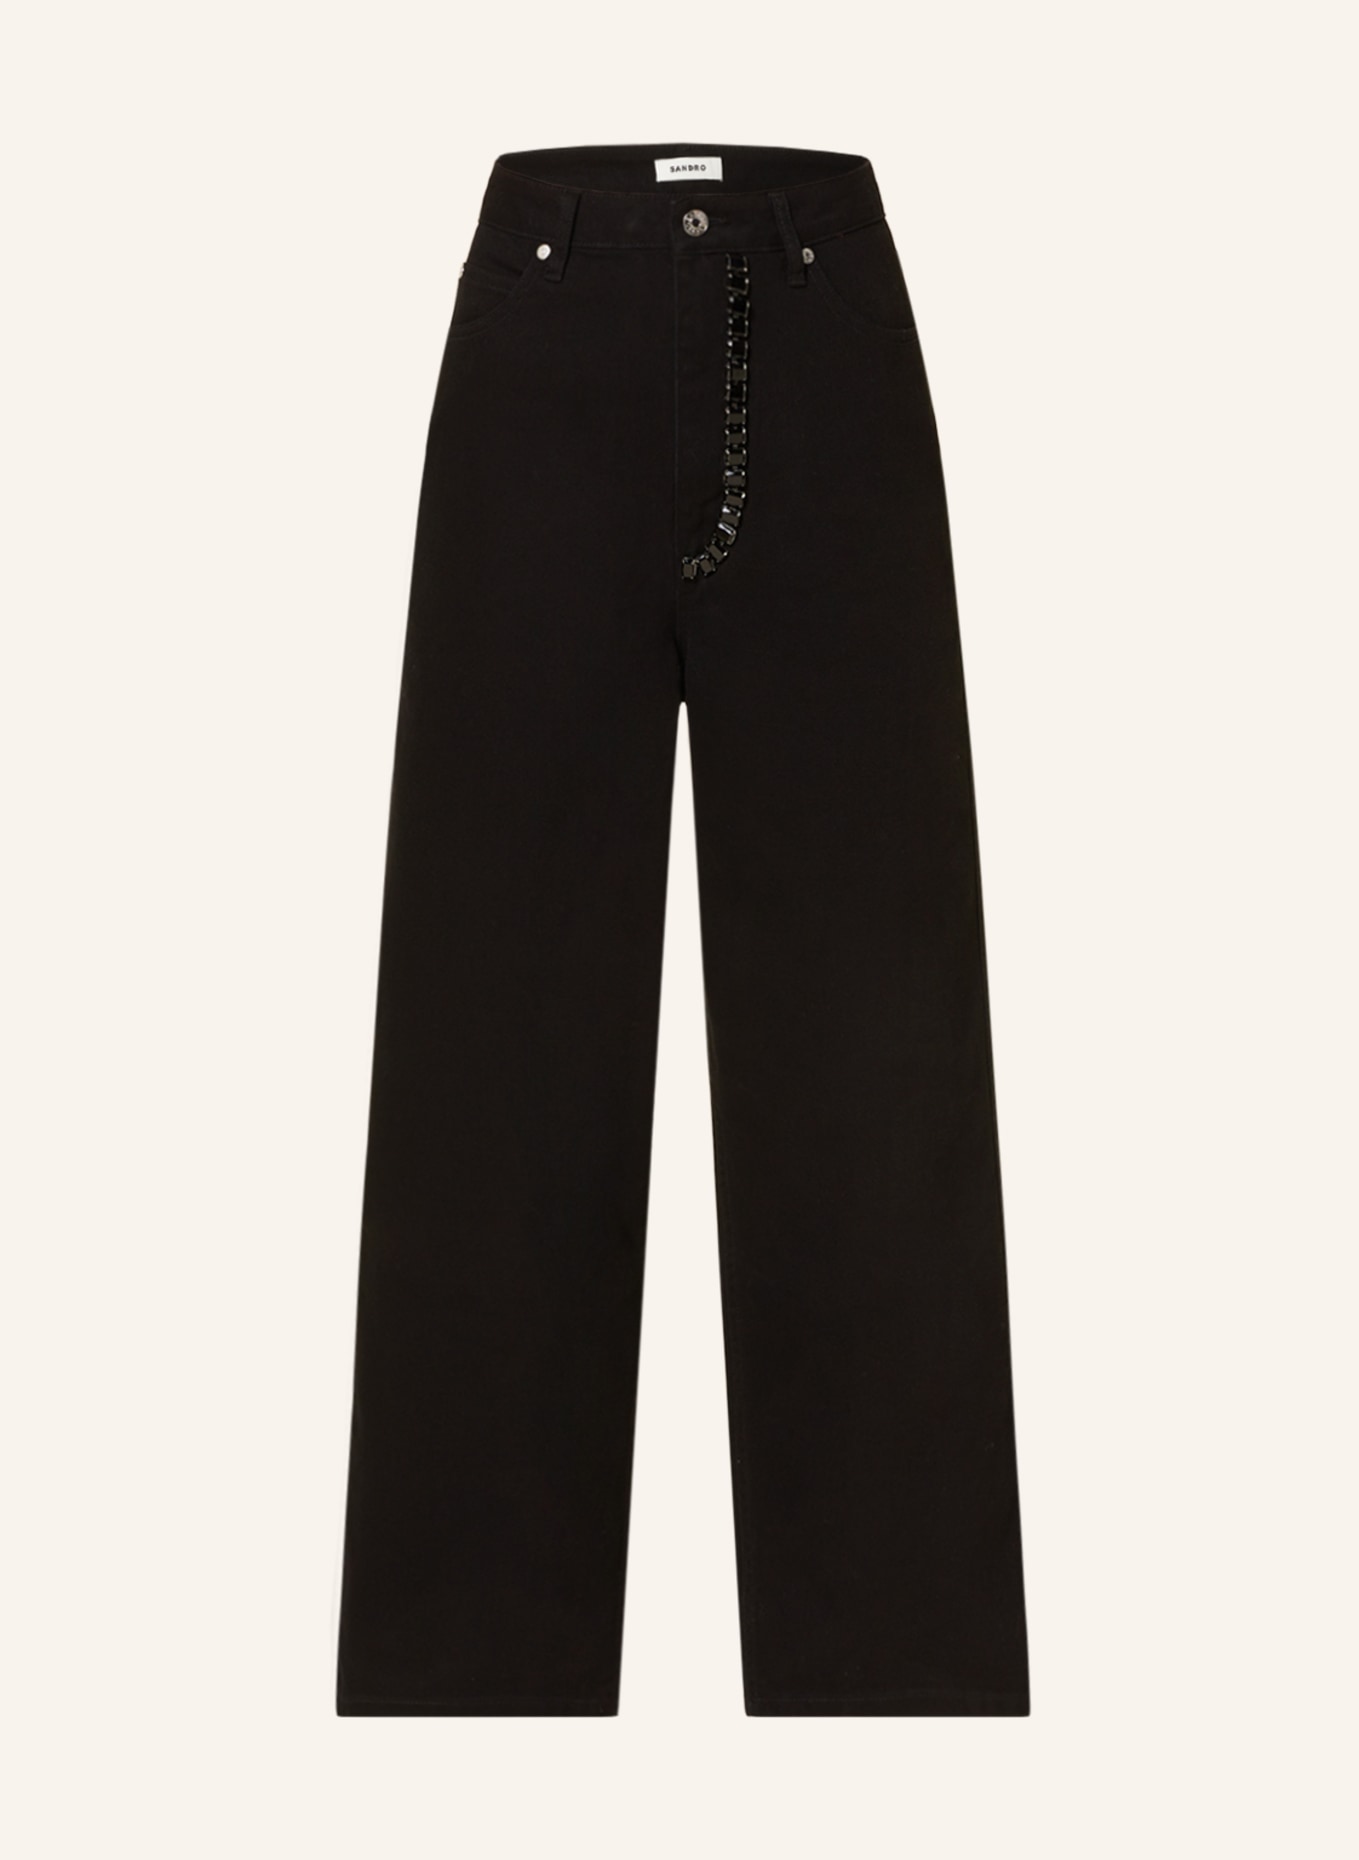 SANDRO Boyfriend Jeans mit Schmucksteinen, Farbe: 20 BLACK (Bild 1)